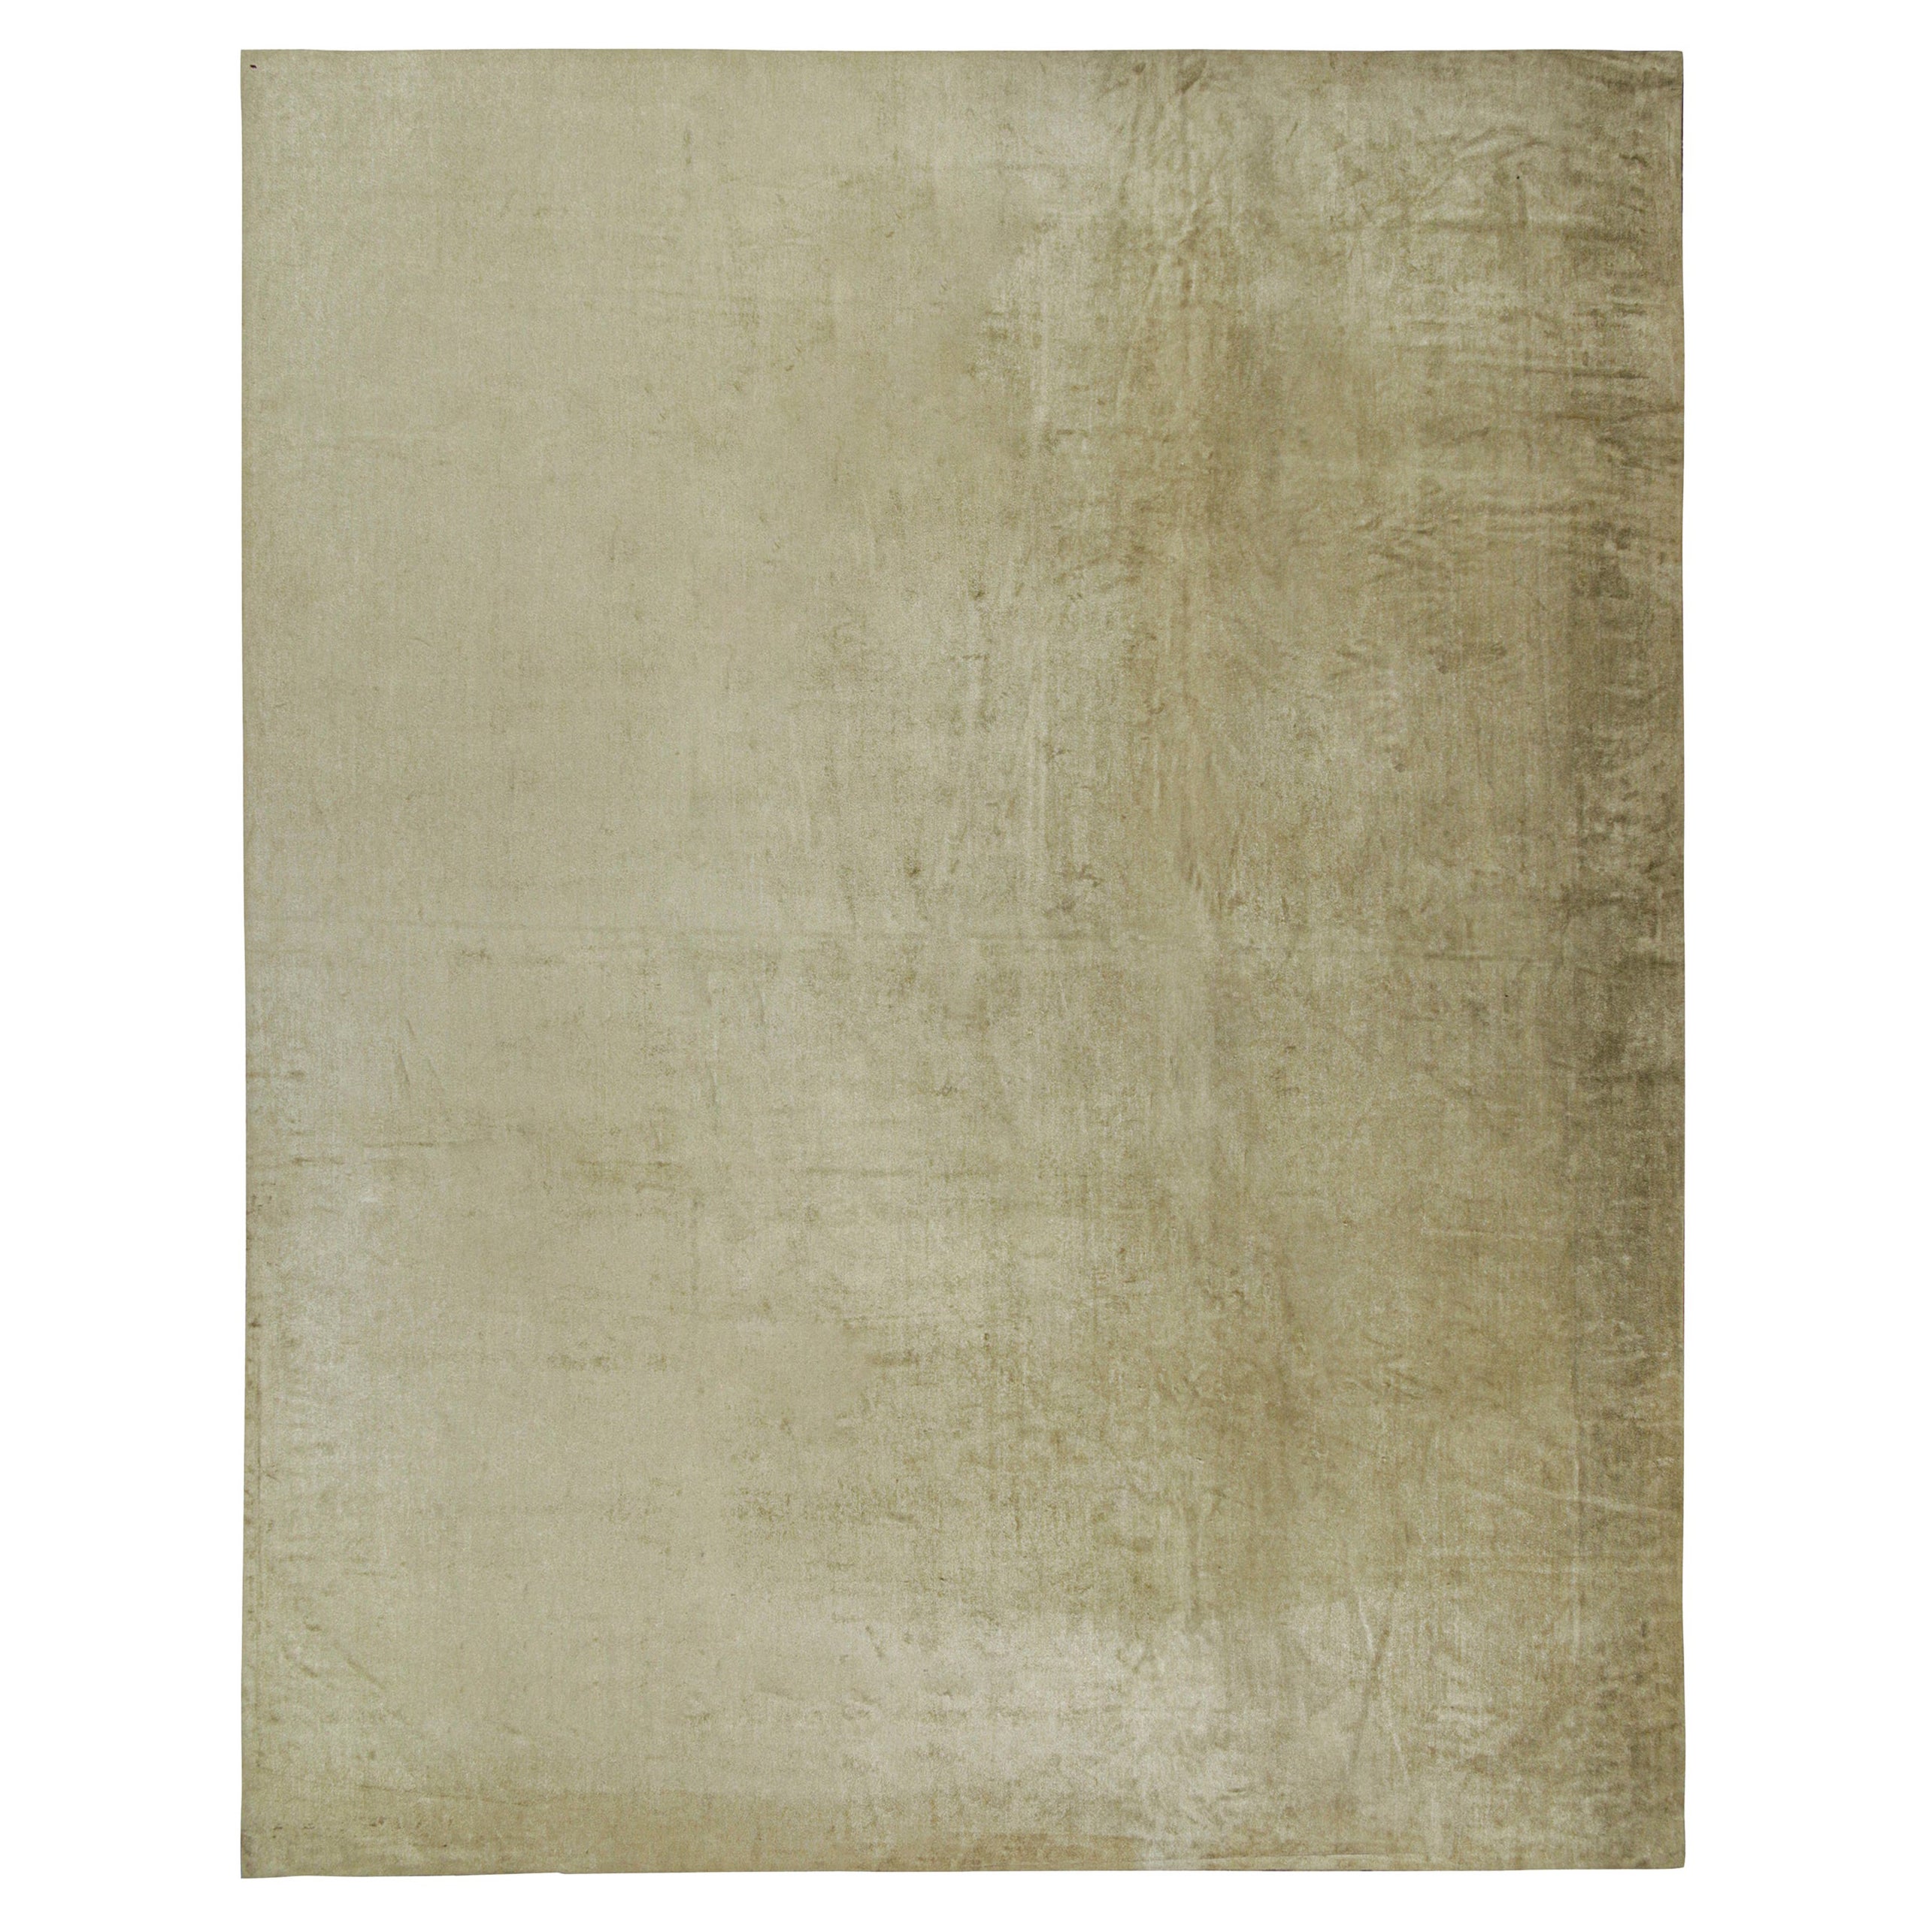 Ce tapis 15×19 est une nouvelle entrée grandiose dans la Collection Nature de Rug & Kilim. Il est noué à la main dans une luxueuse soie entièrement naturelle.

Sur le Design :

La Collectional propose une approche inventive des tapis unis et une